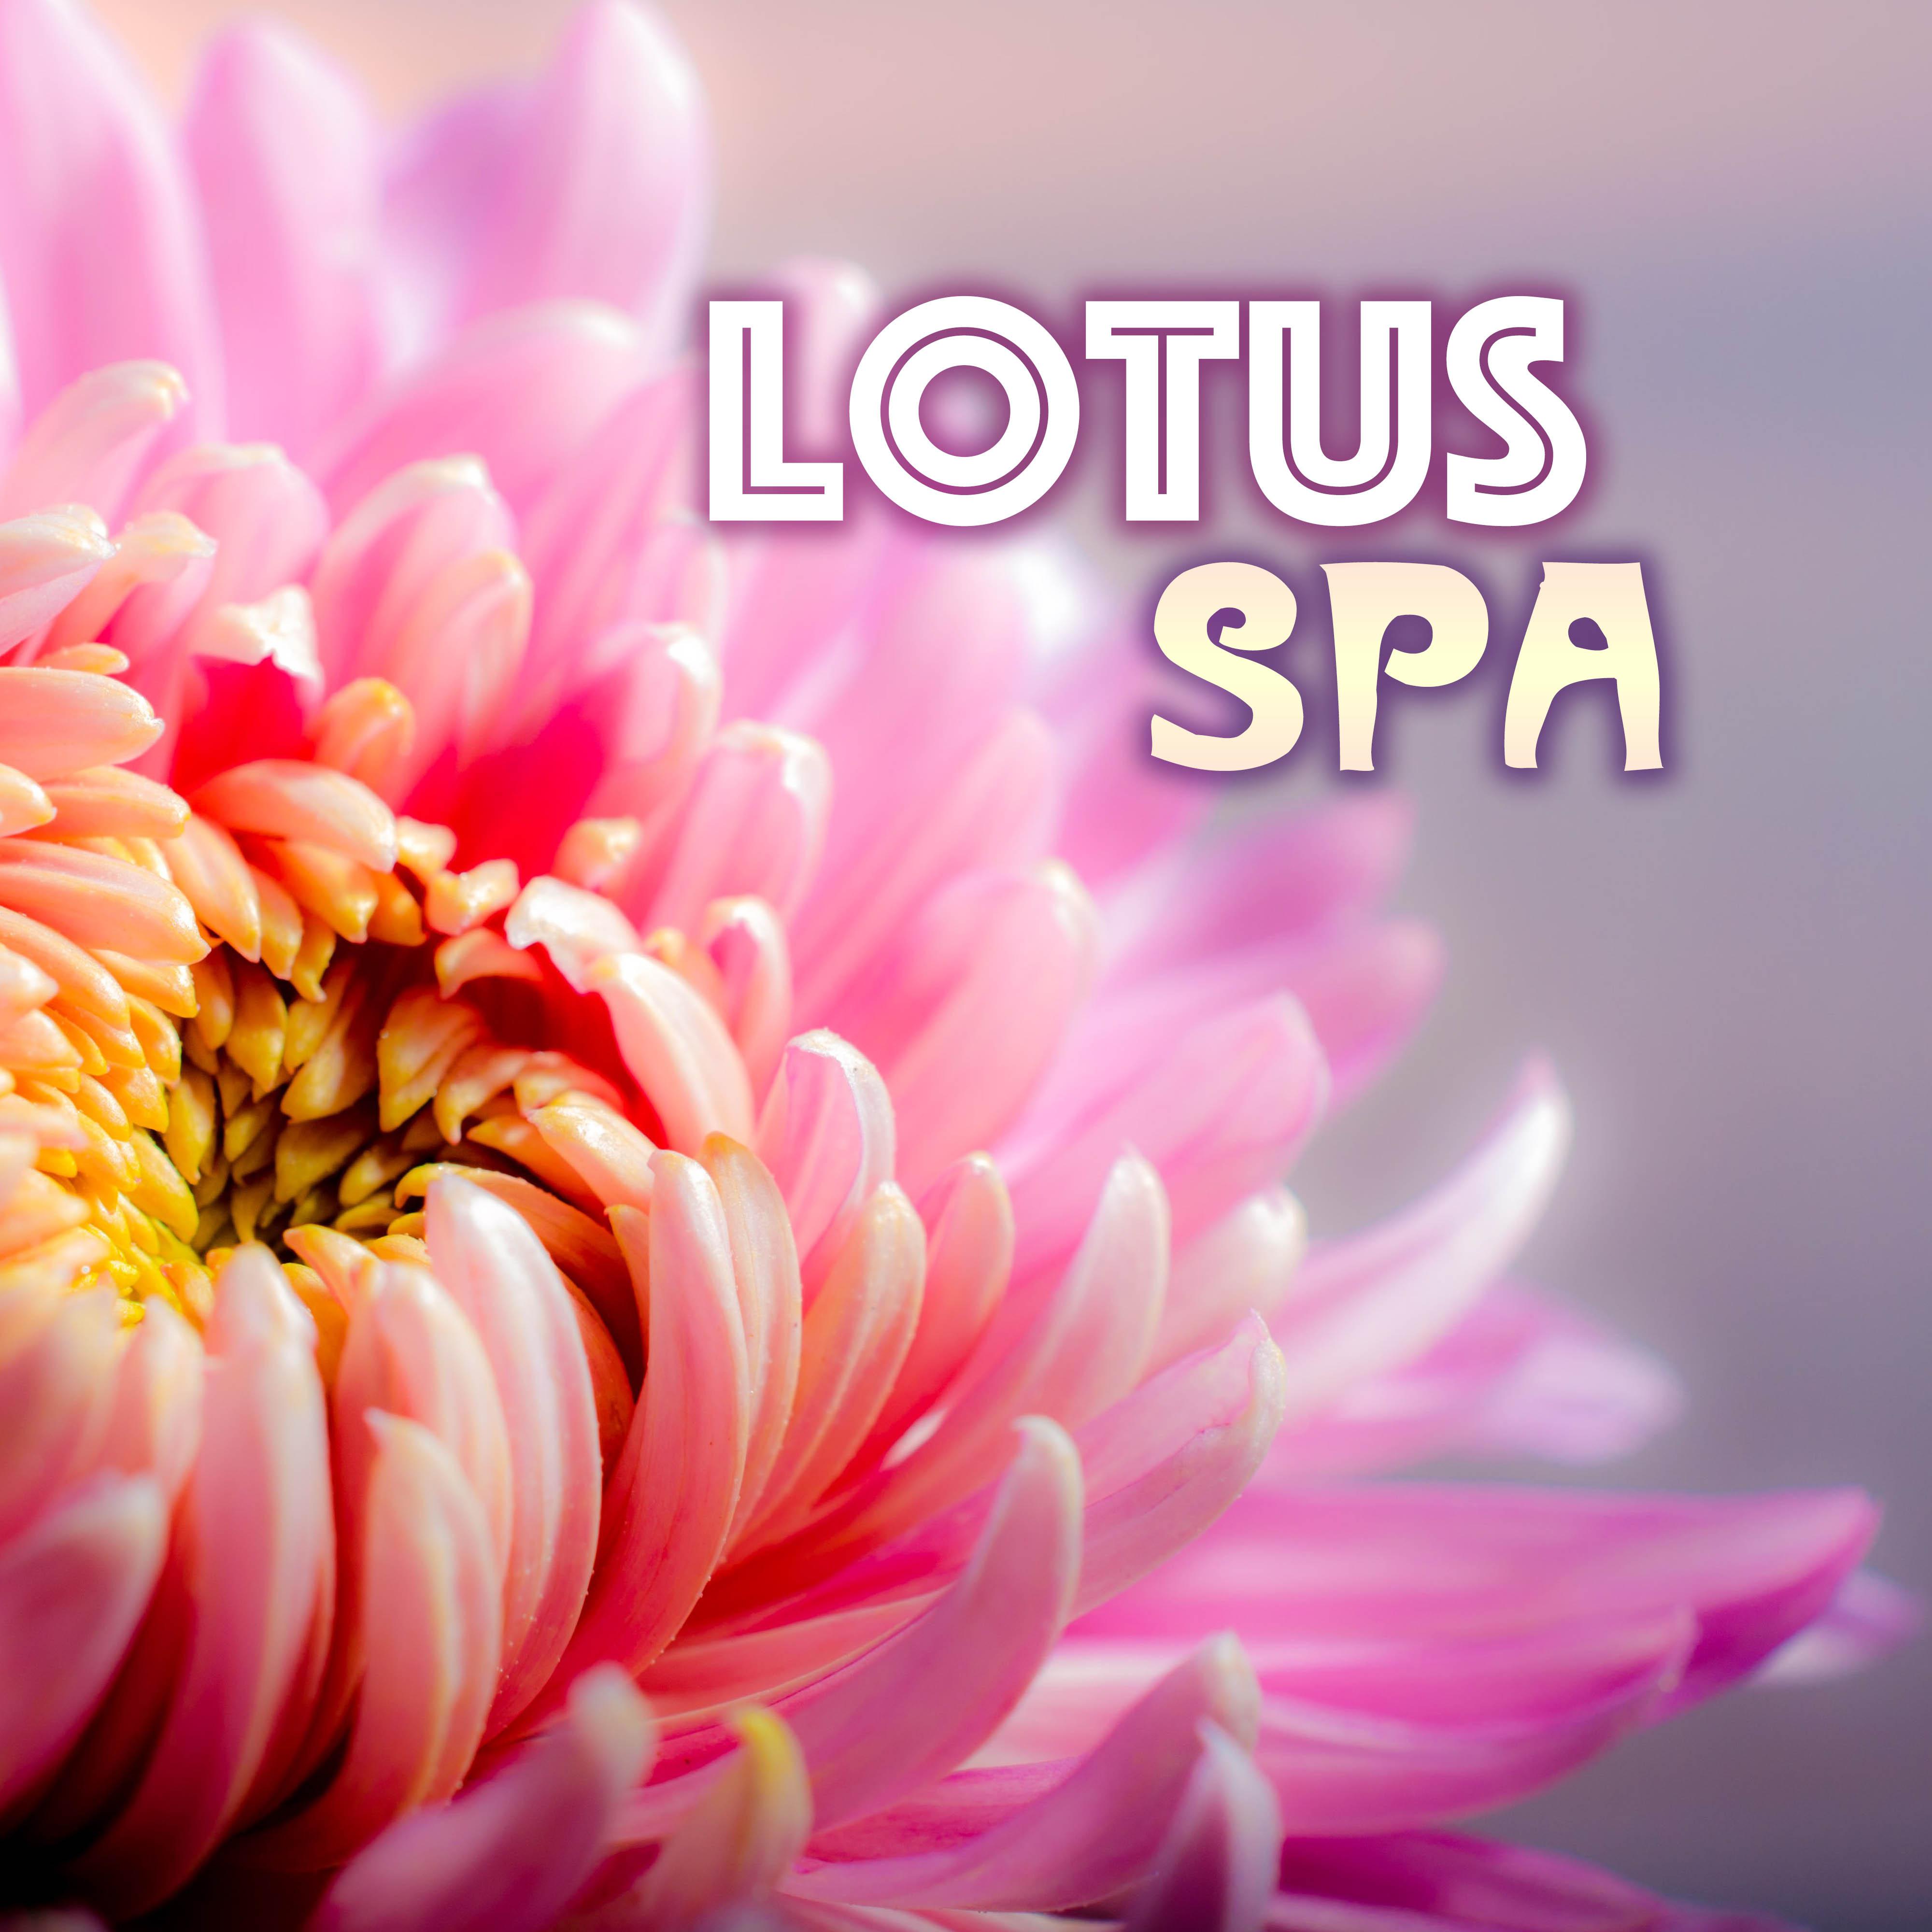 Lotus Spa - Asian Zen Meditate